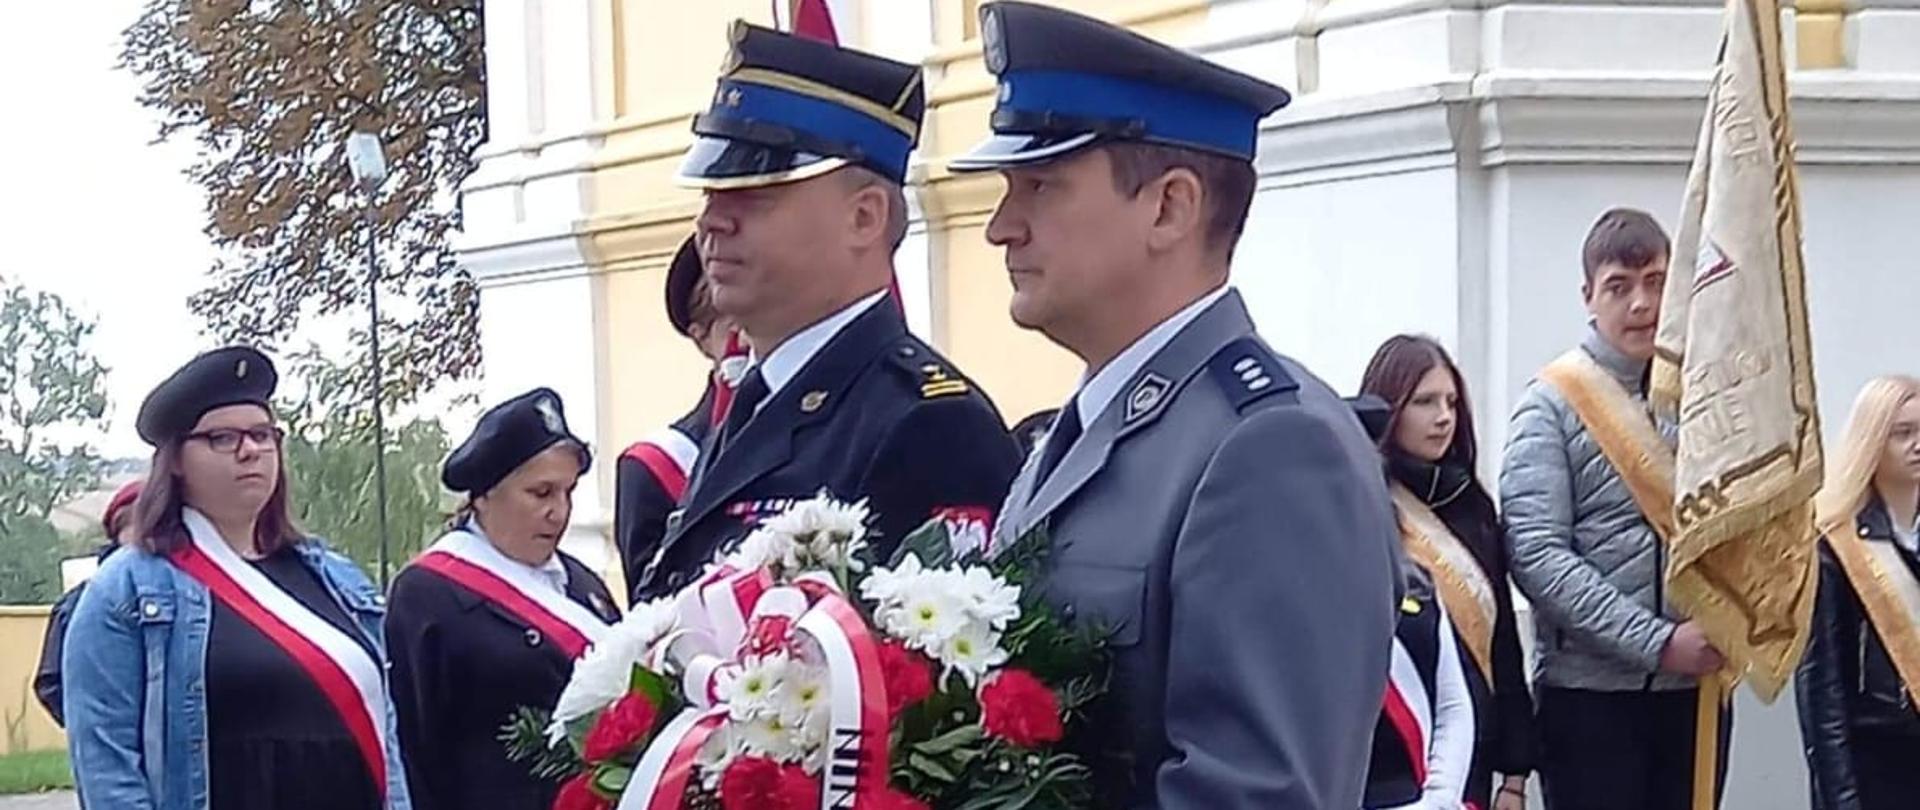 Zdjęcie przedstawia zastępcę komendanta miejskiego oraz policjanta, którzy ubrani są w mundury wyjściowe. Policjant trzyma w ręku kwiaty, które zostaną złożone pod tablicą pamiątkową Sybiraków. Z tytuł widać poczty sztandarowe. 